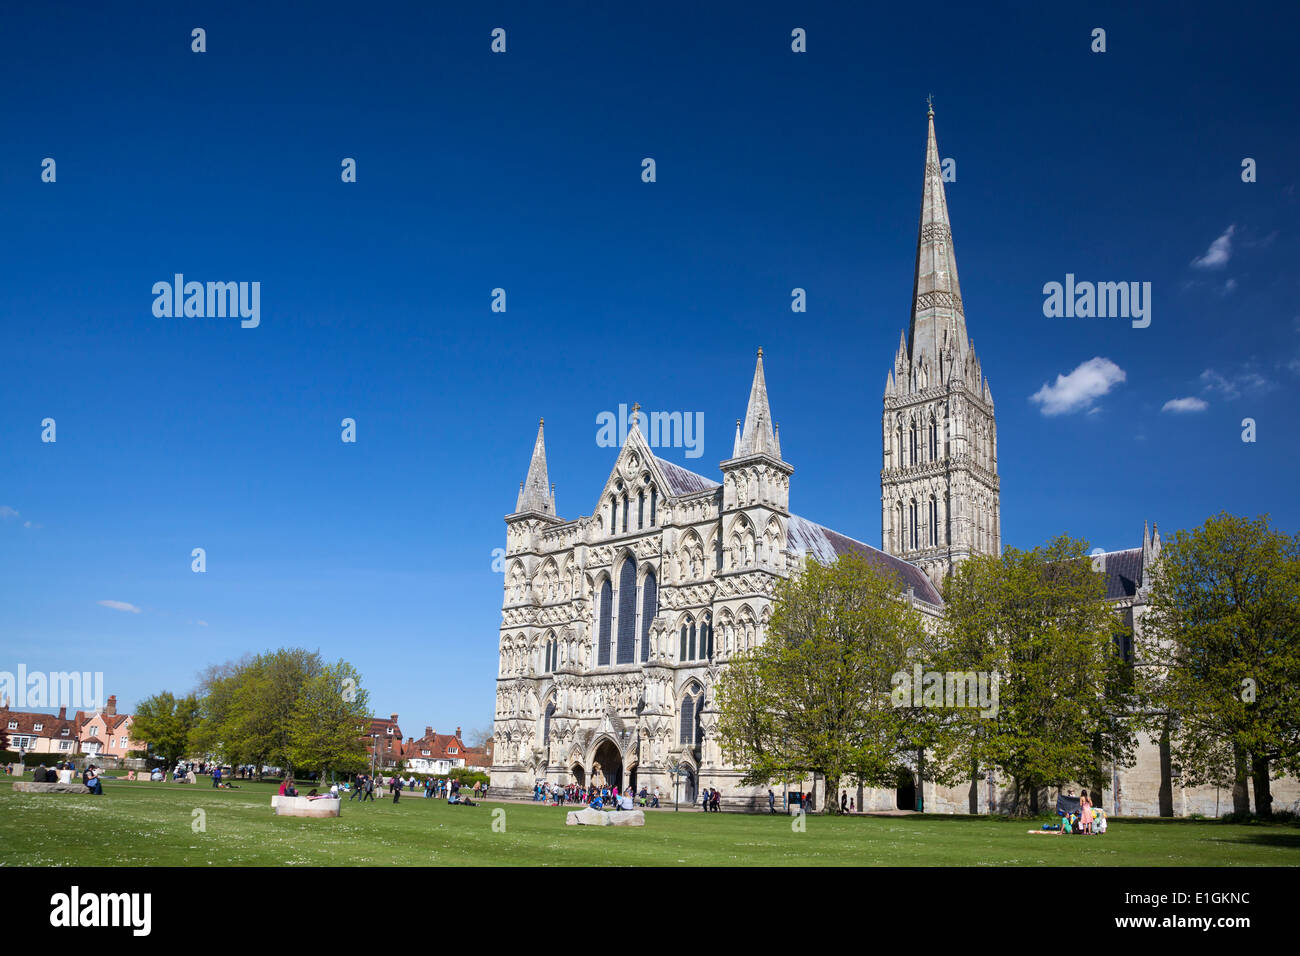 Début de style gothique anglais La cathédrale de Salisbury avec les talest spire dans le pays. Europe Royaume-Uni Angleterre Wiltshire Banque D'Images